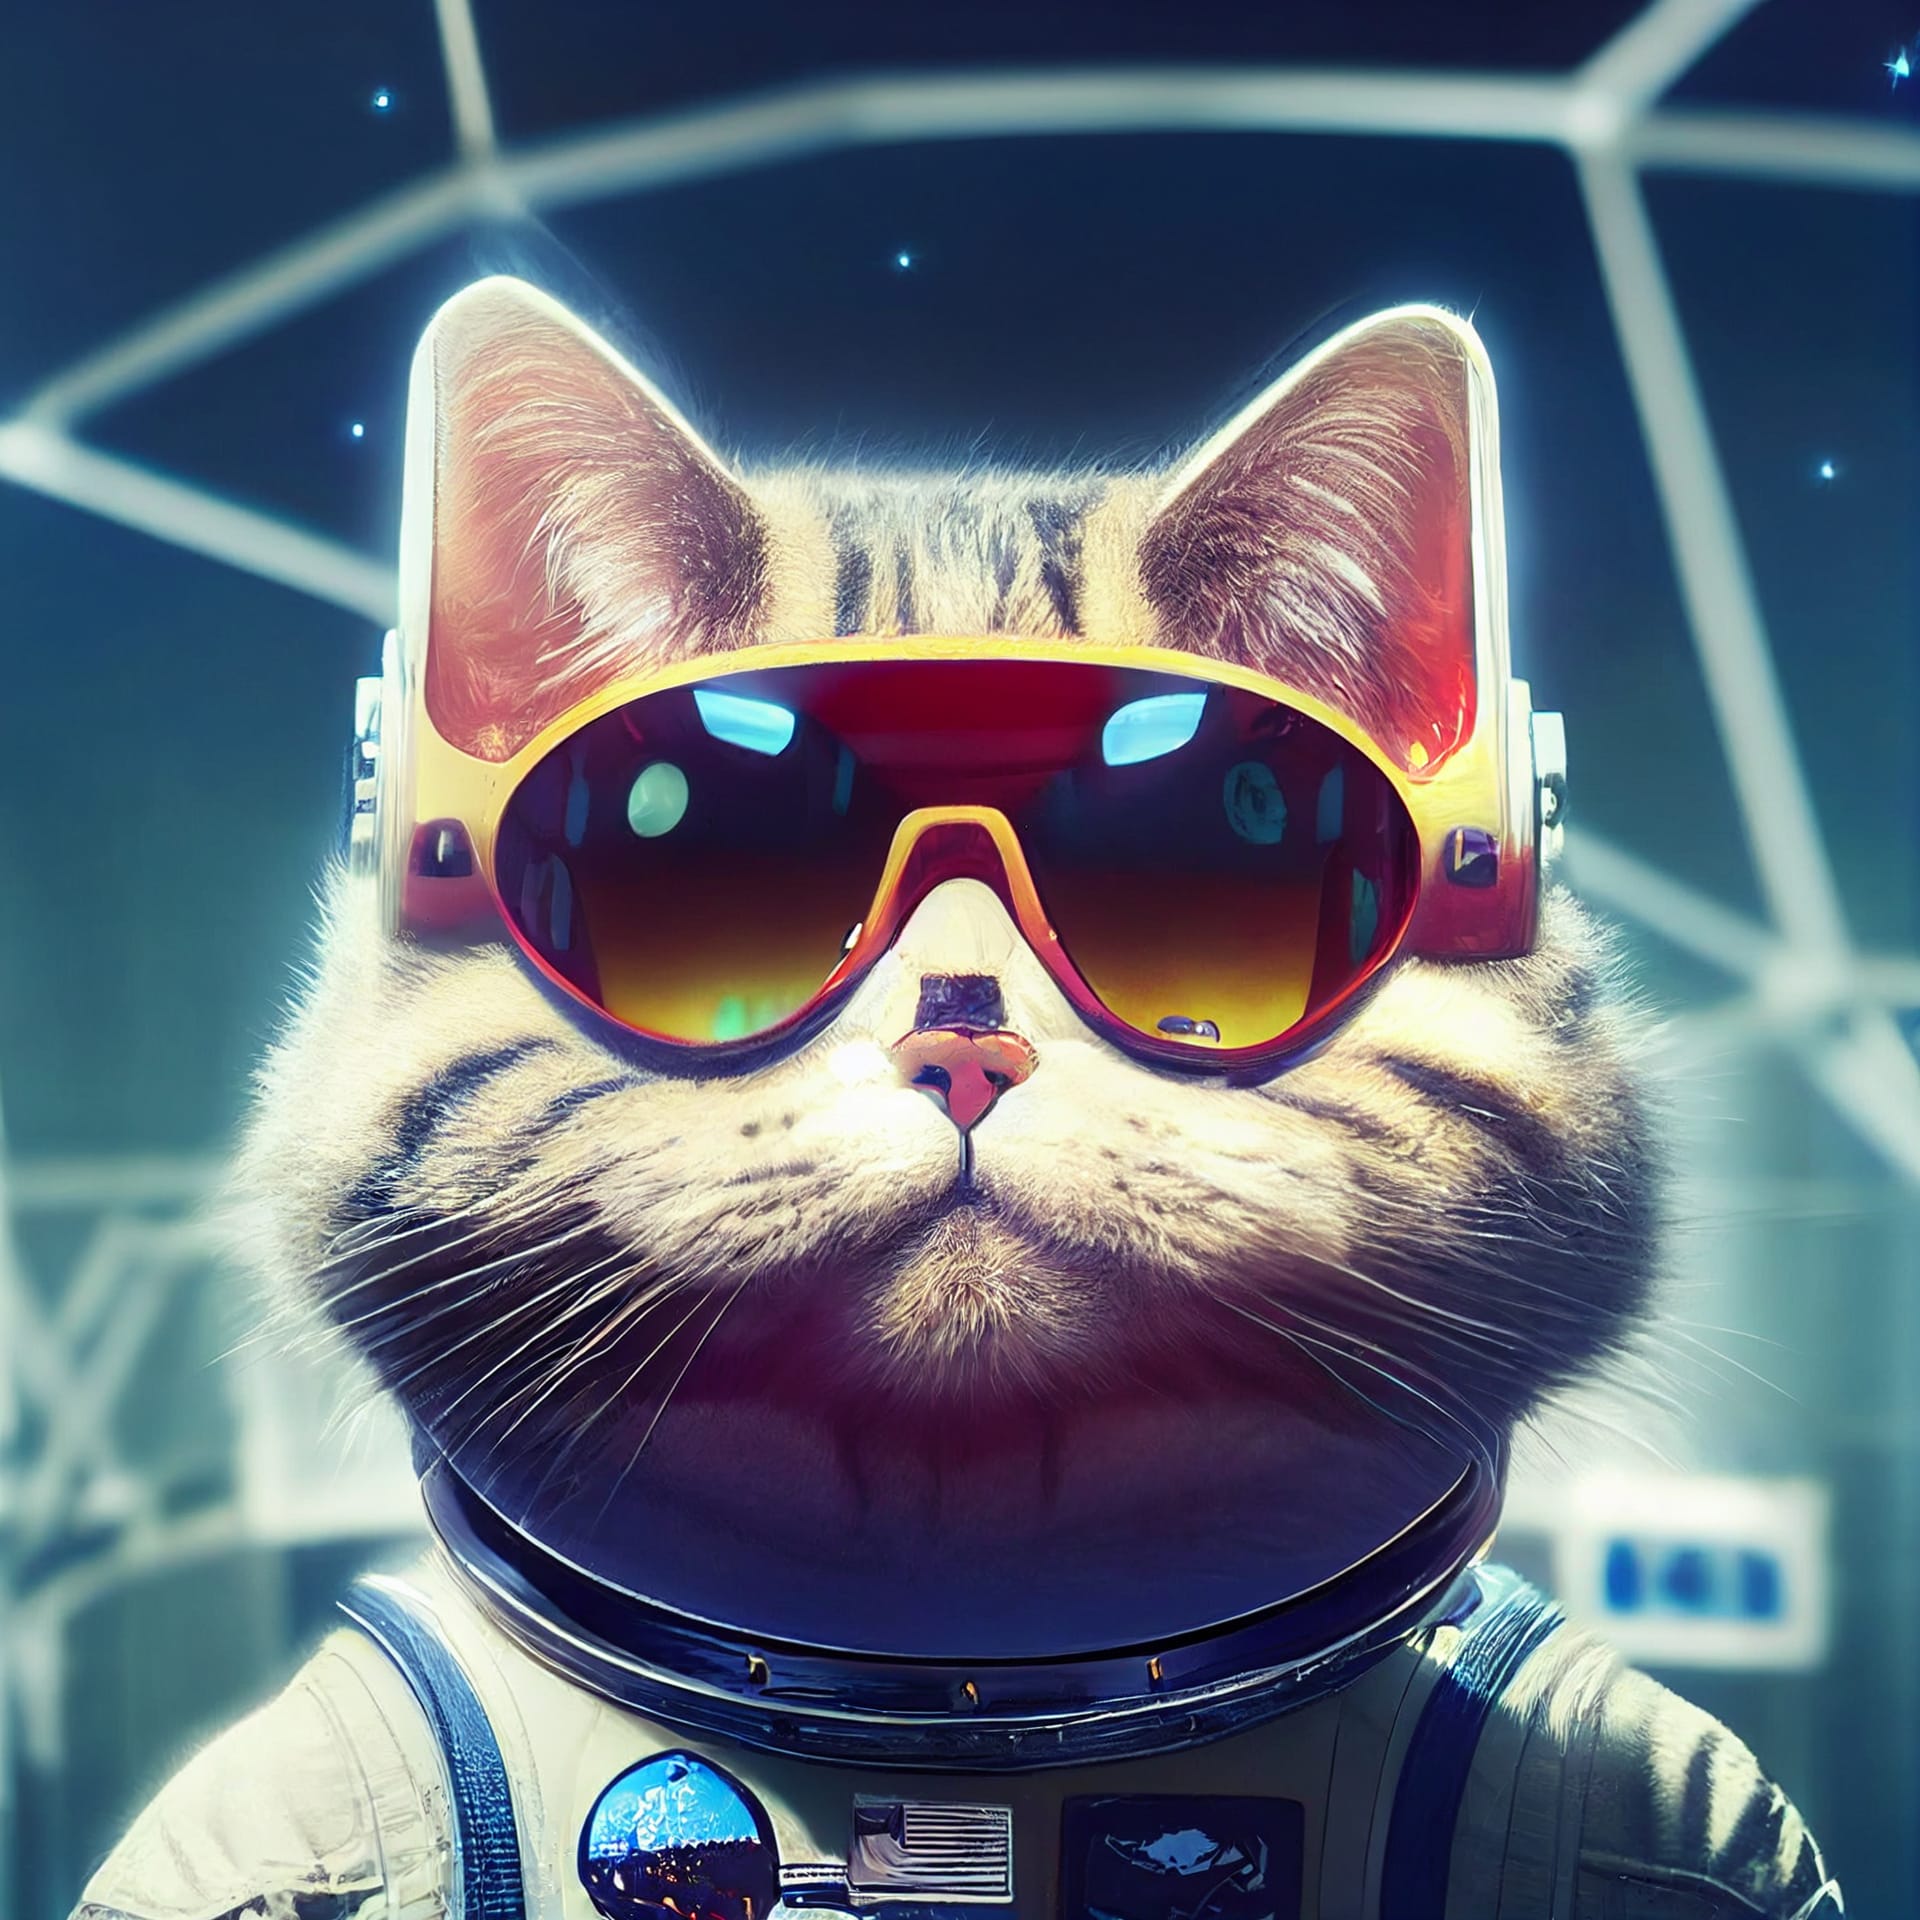 Portrait astronaut cat space surreal illustration image